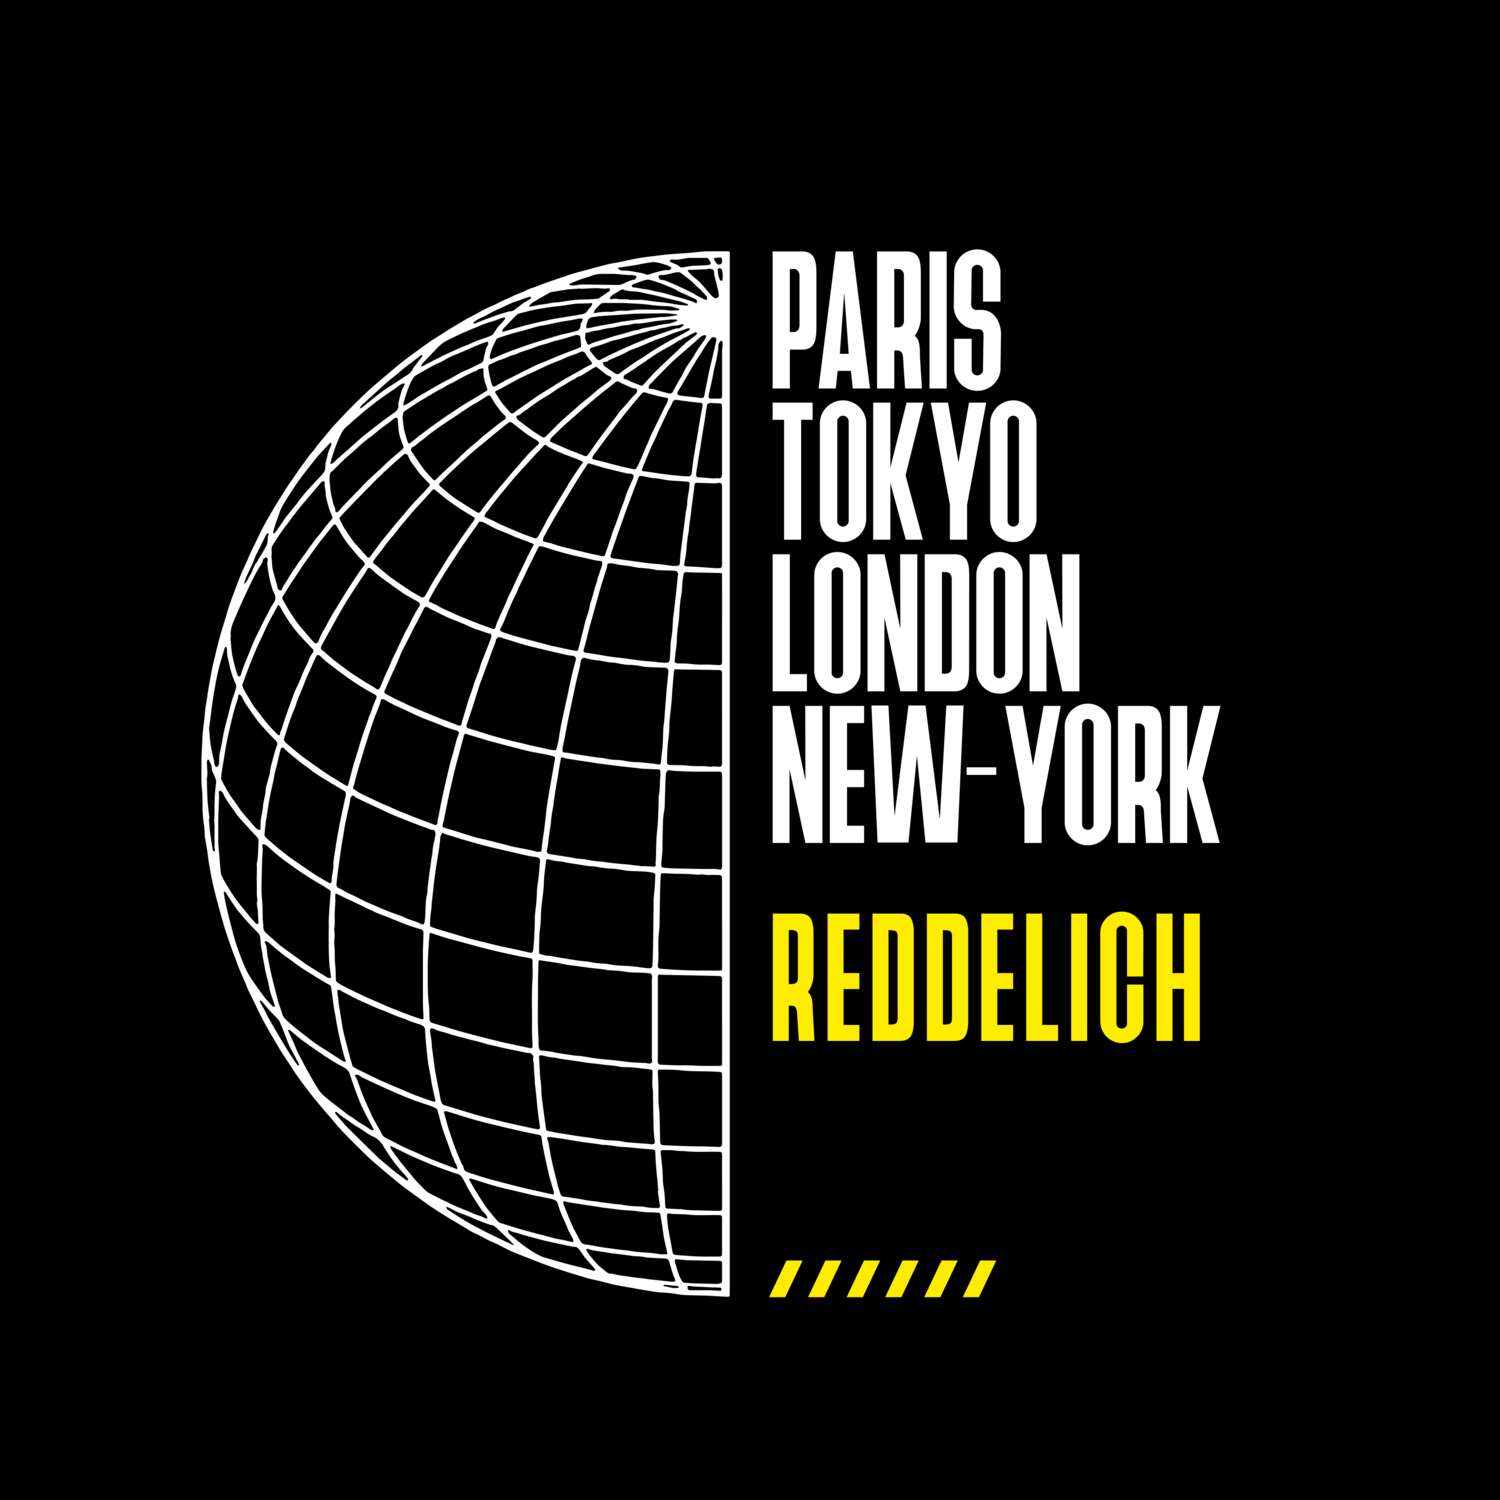 Reddelich T-Shirt »Paris Tokyo London«